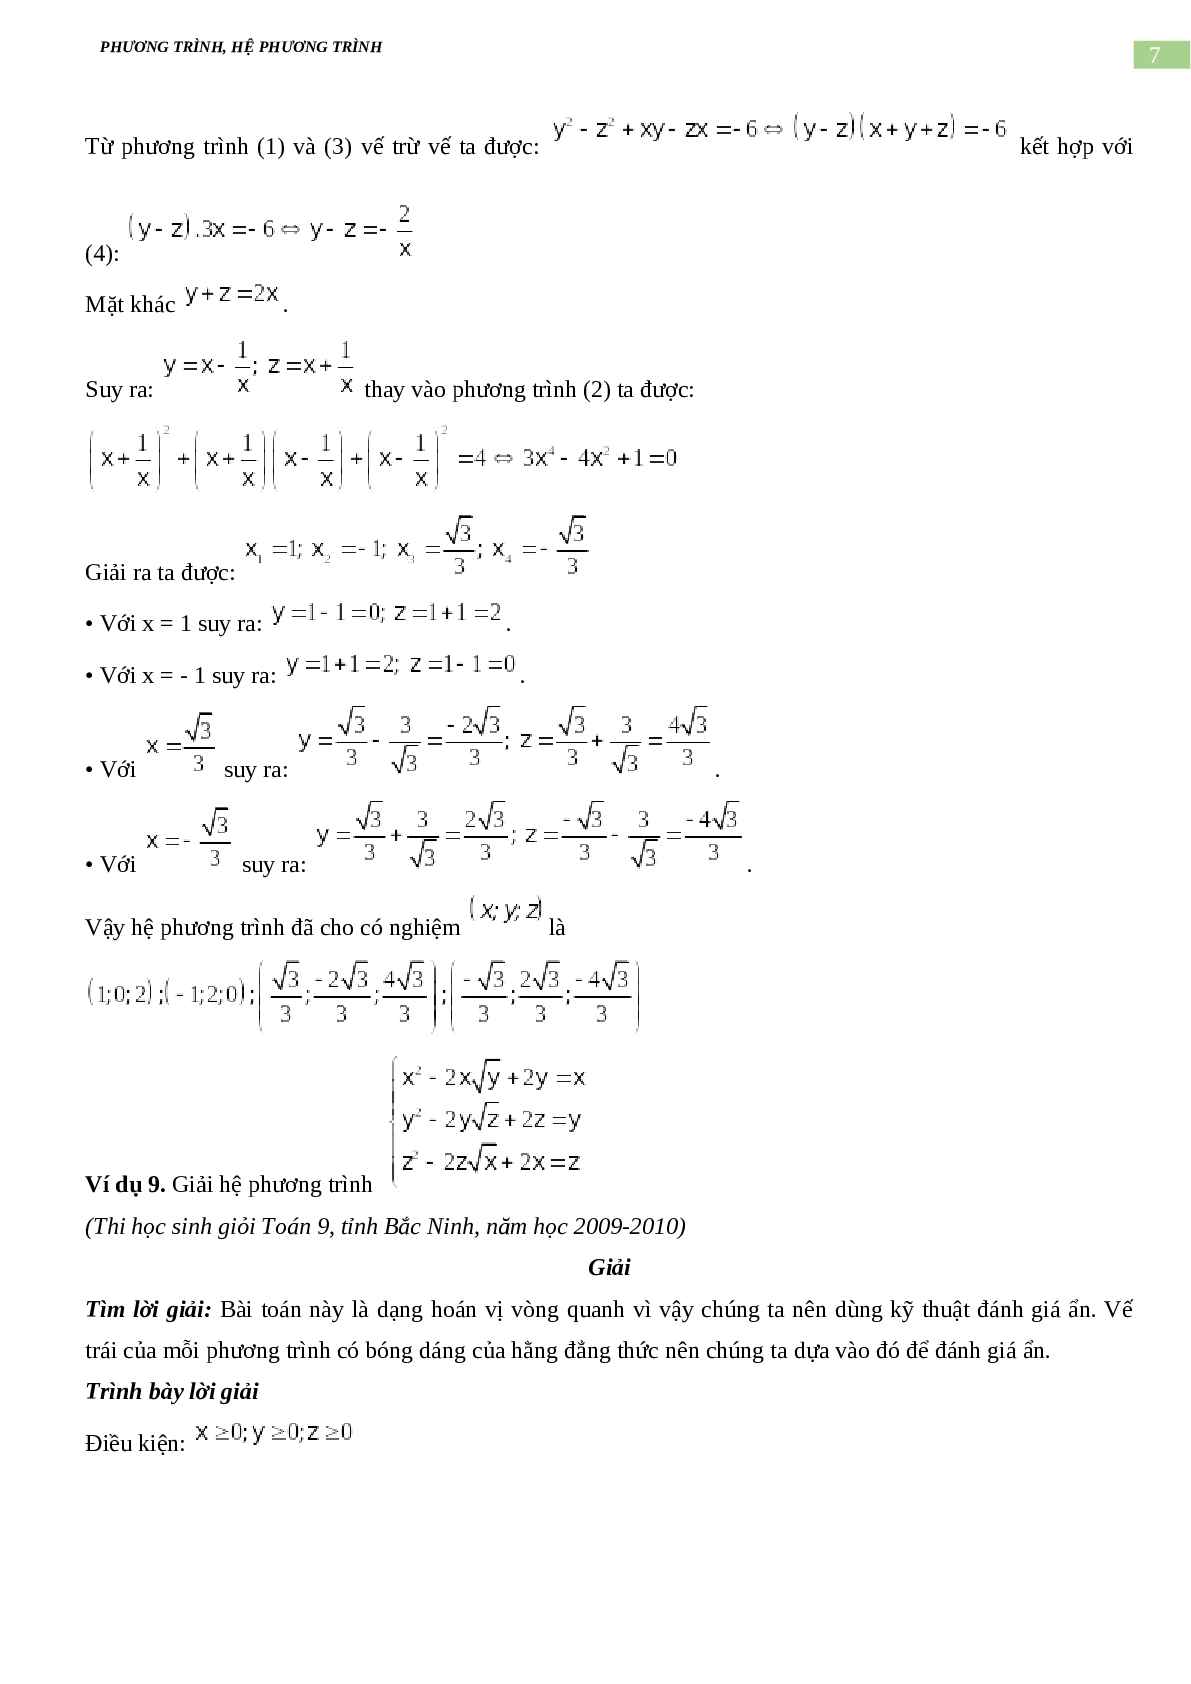 Bài tập về phương trình, hệ phương trình, bất phương trình không mẫu mực có đáp án, chọn lọc (trang 7)